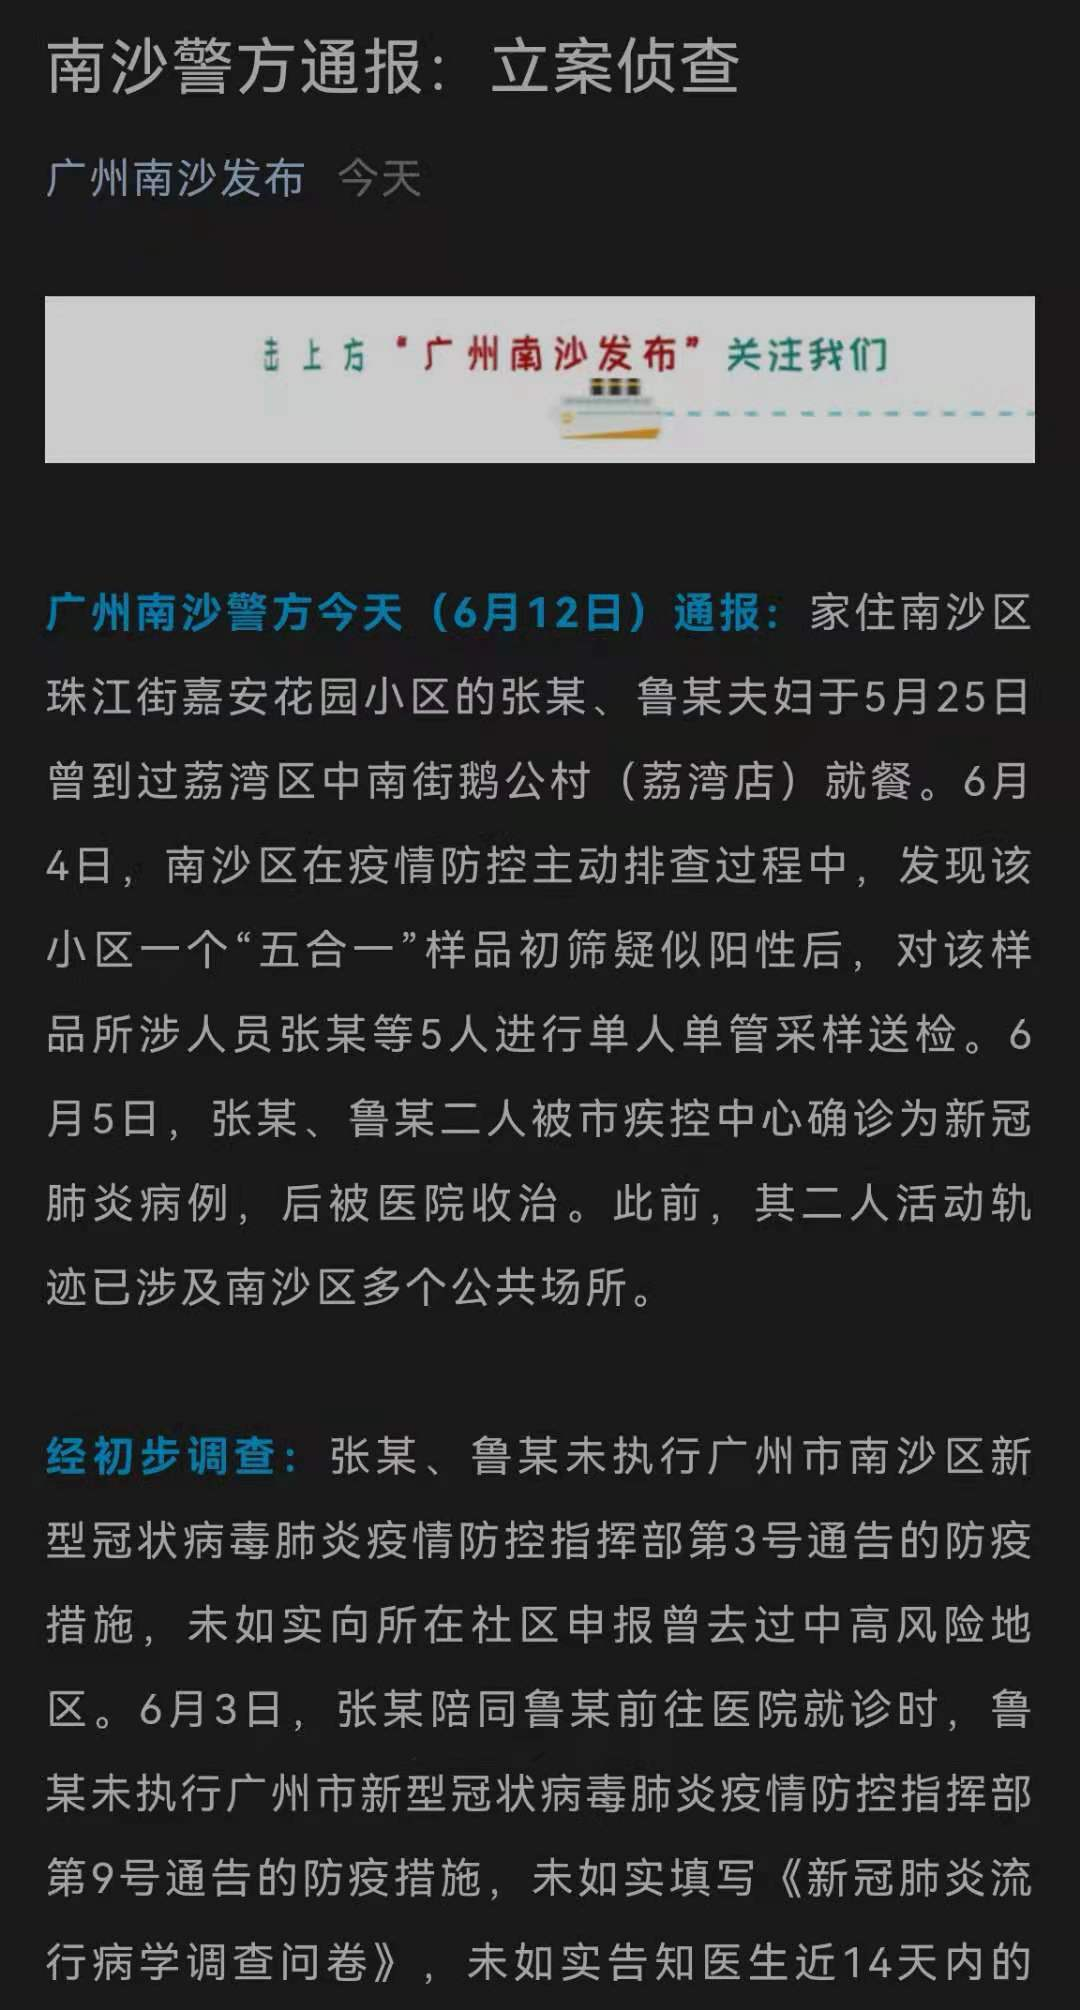 冲上热搜广州6成确诊病例以为自己是感冒一对夫妇隐瞒行程被立案侦查